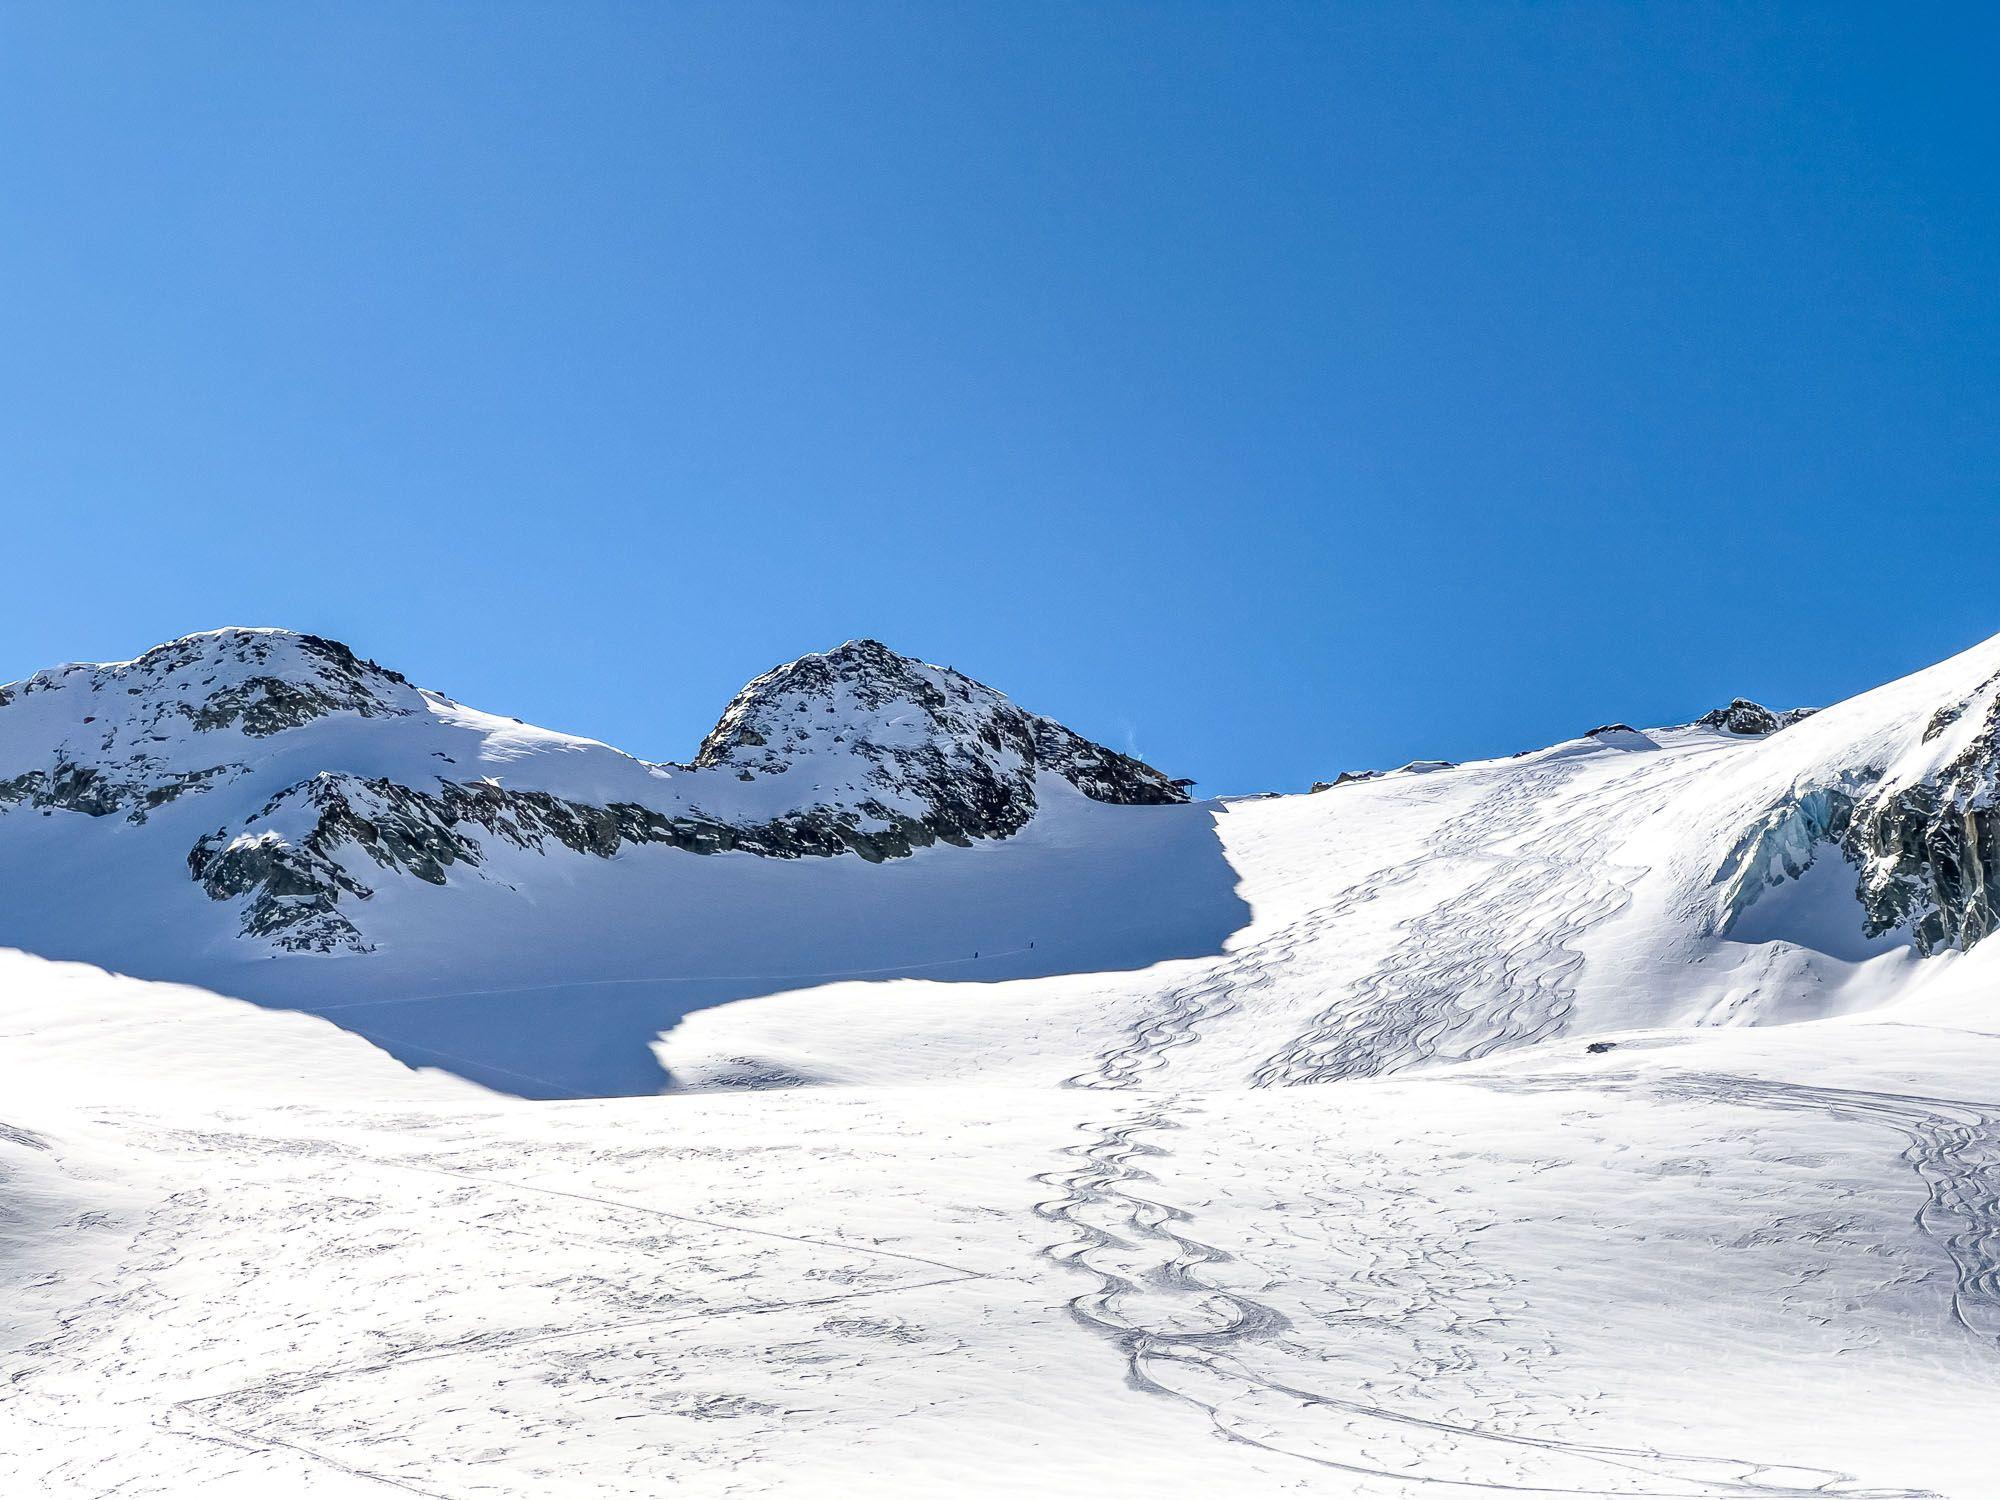 The Glacier de Pièce with the 3,153 m high Col des Vignettes